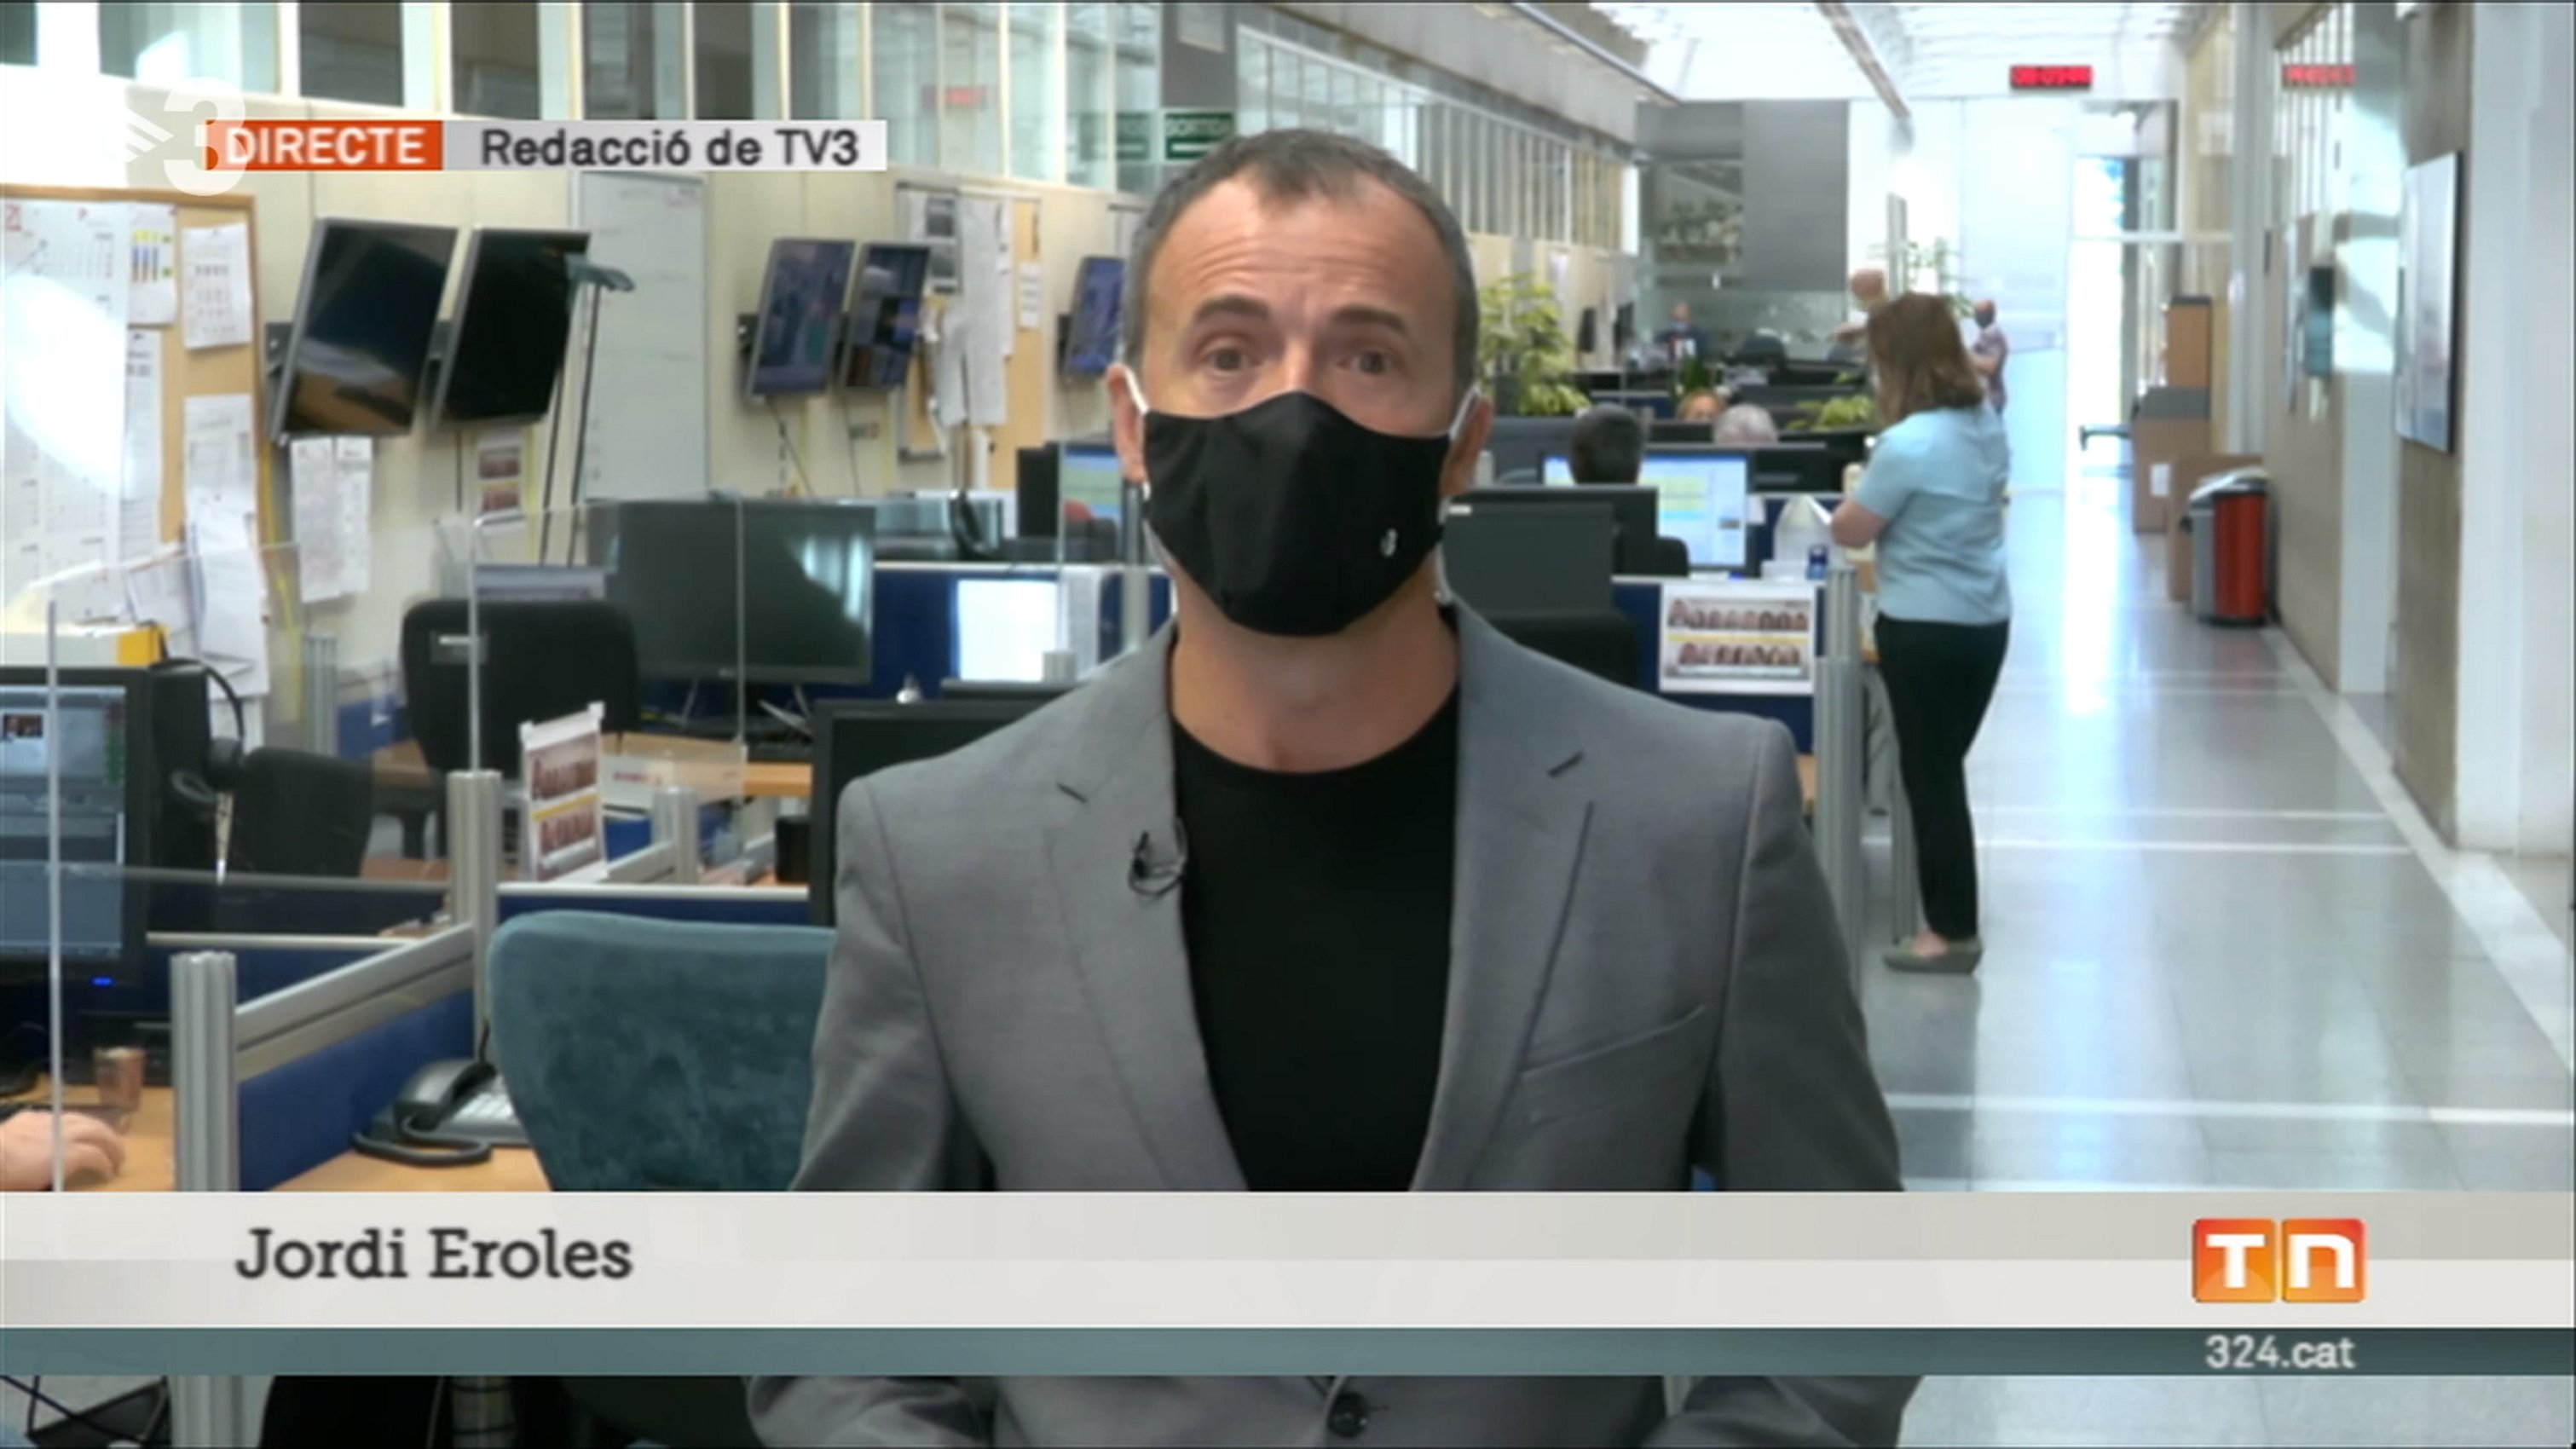 La foto de Jordi Eroles de TV3 en un día histórico para Catalunya